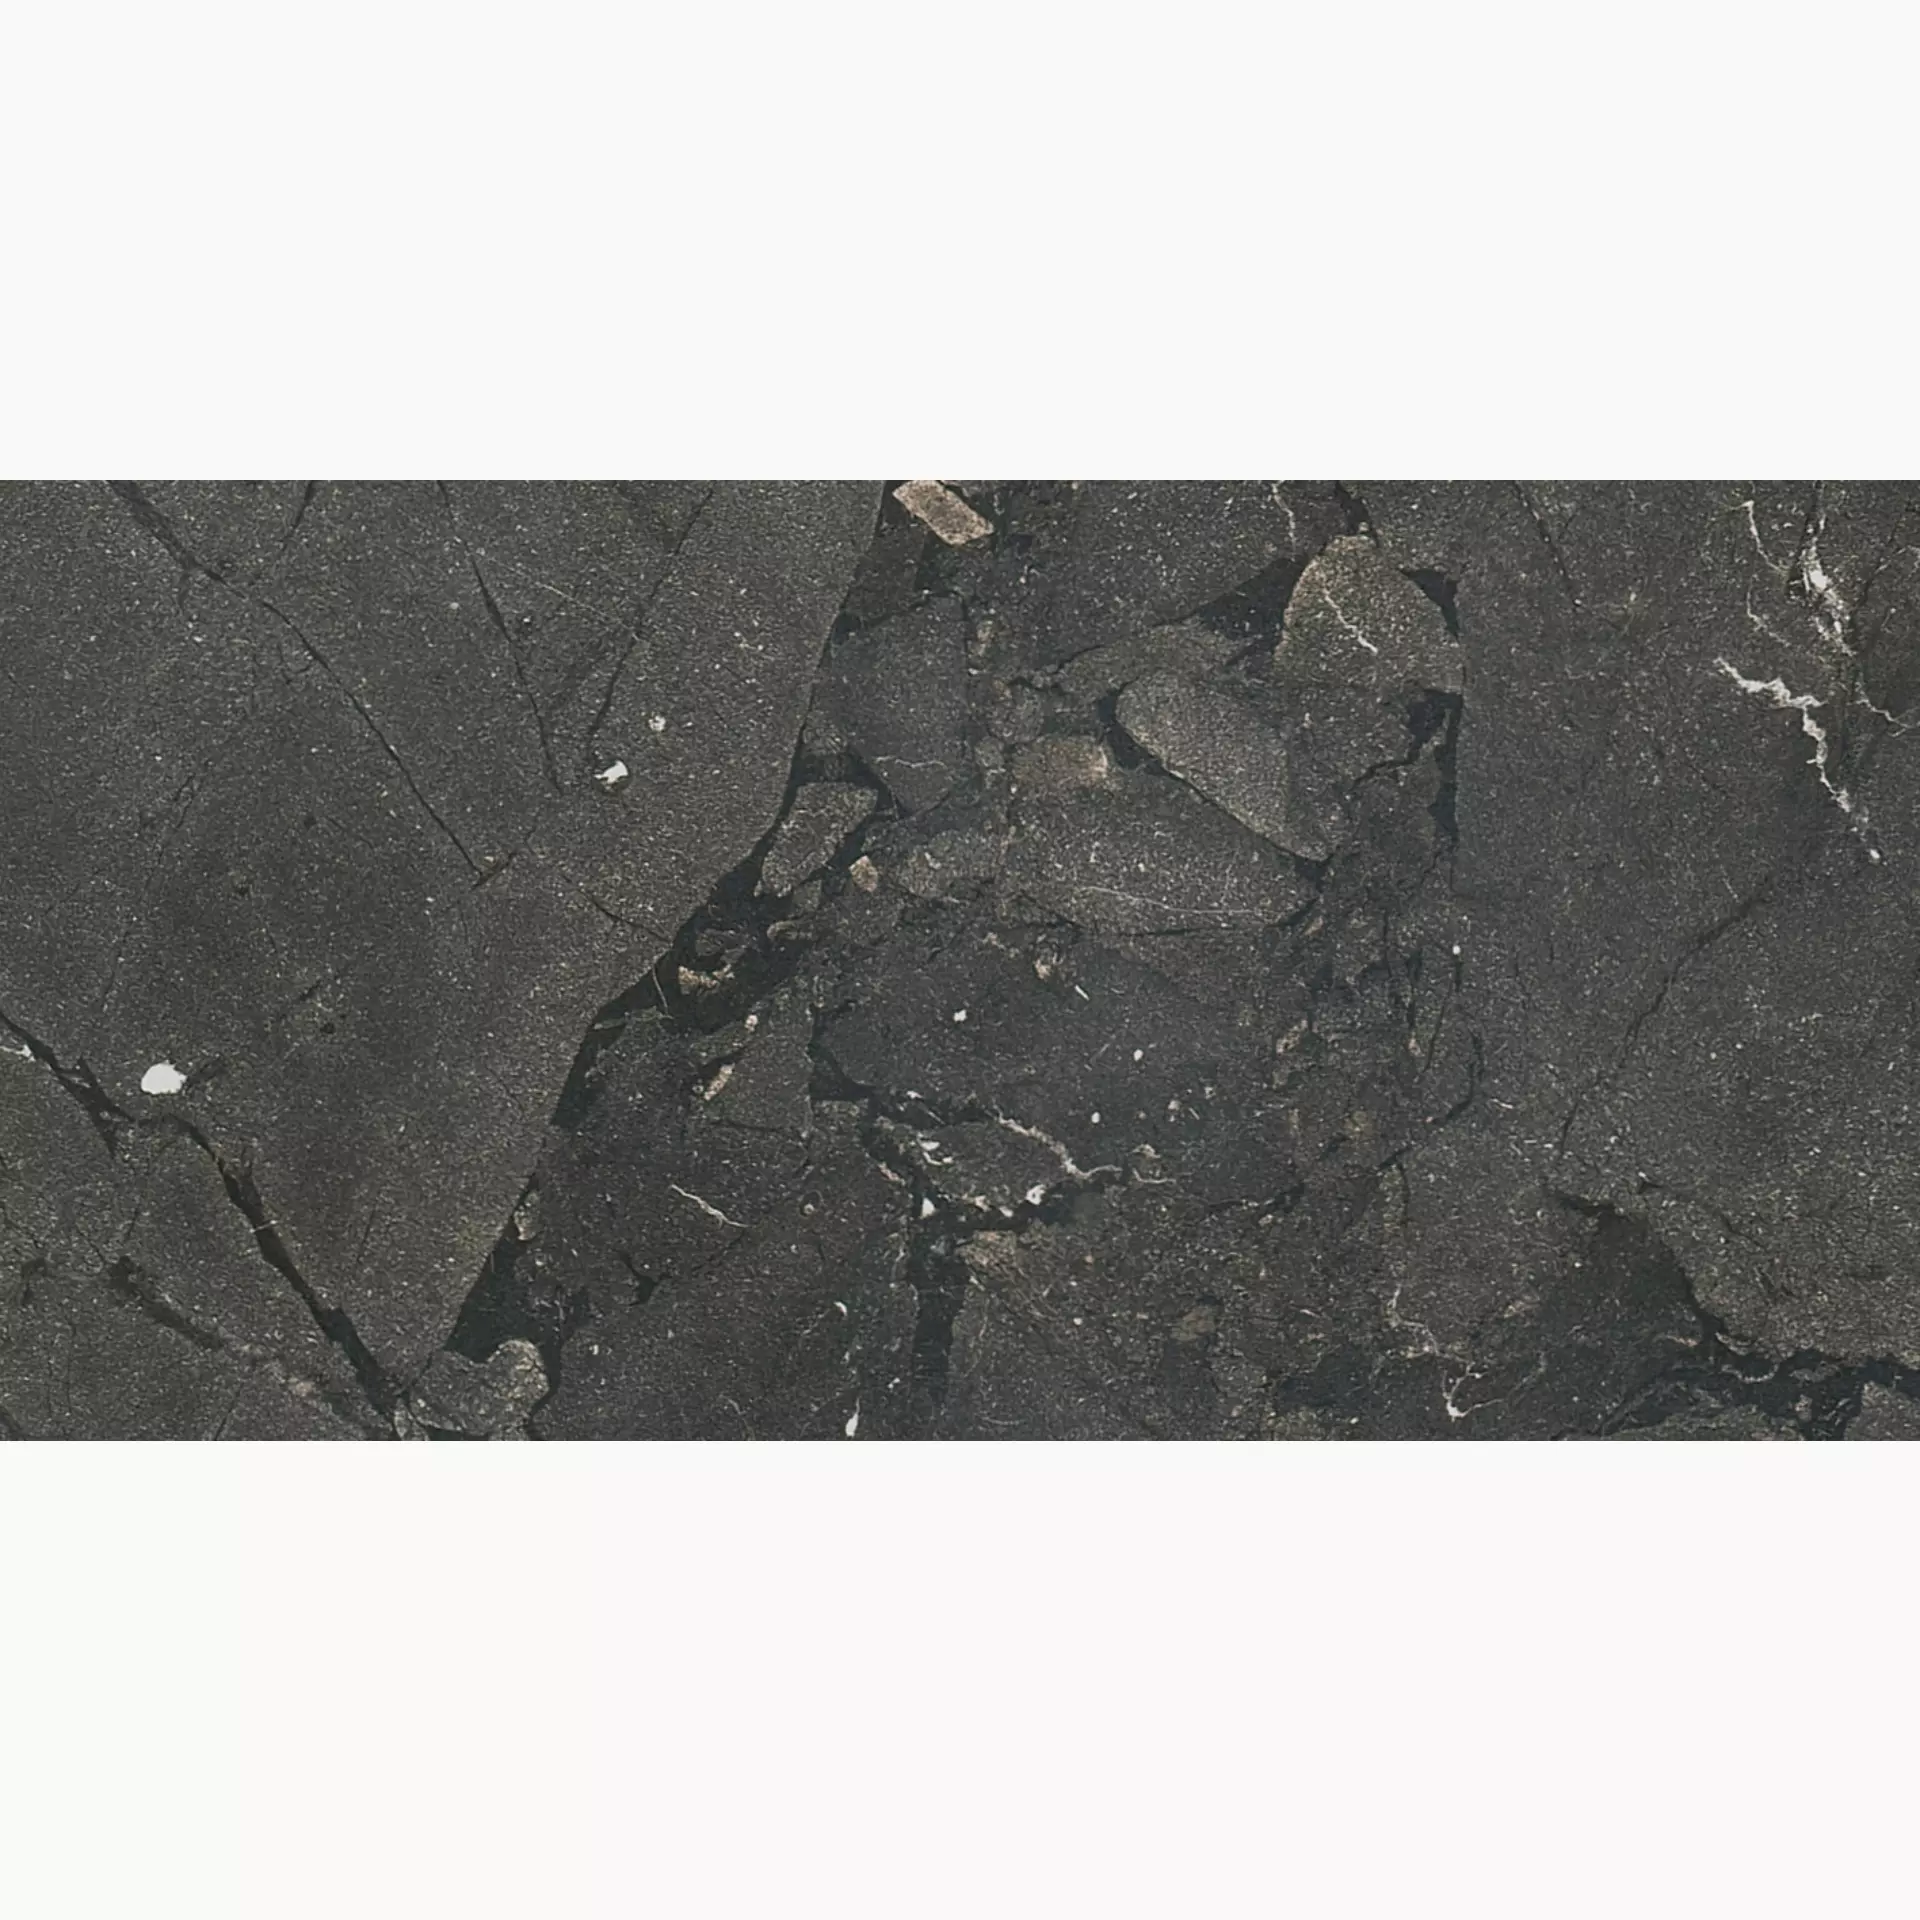 Florim Timeless Black Deep Naturale – Matt 744860 30x60cm rectified 9mm